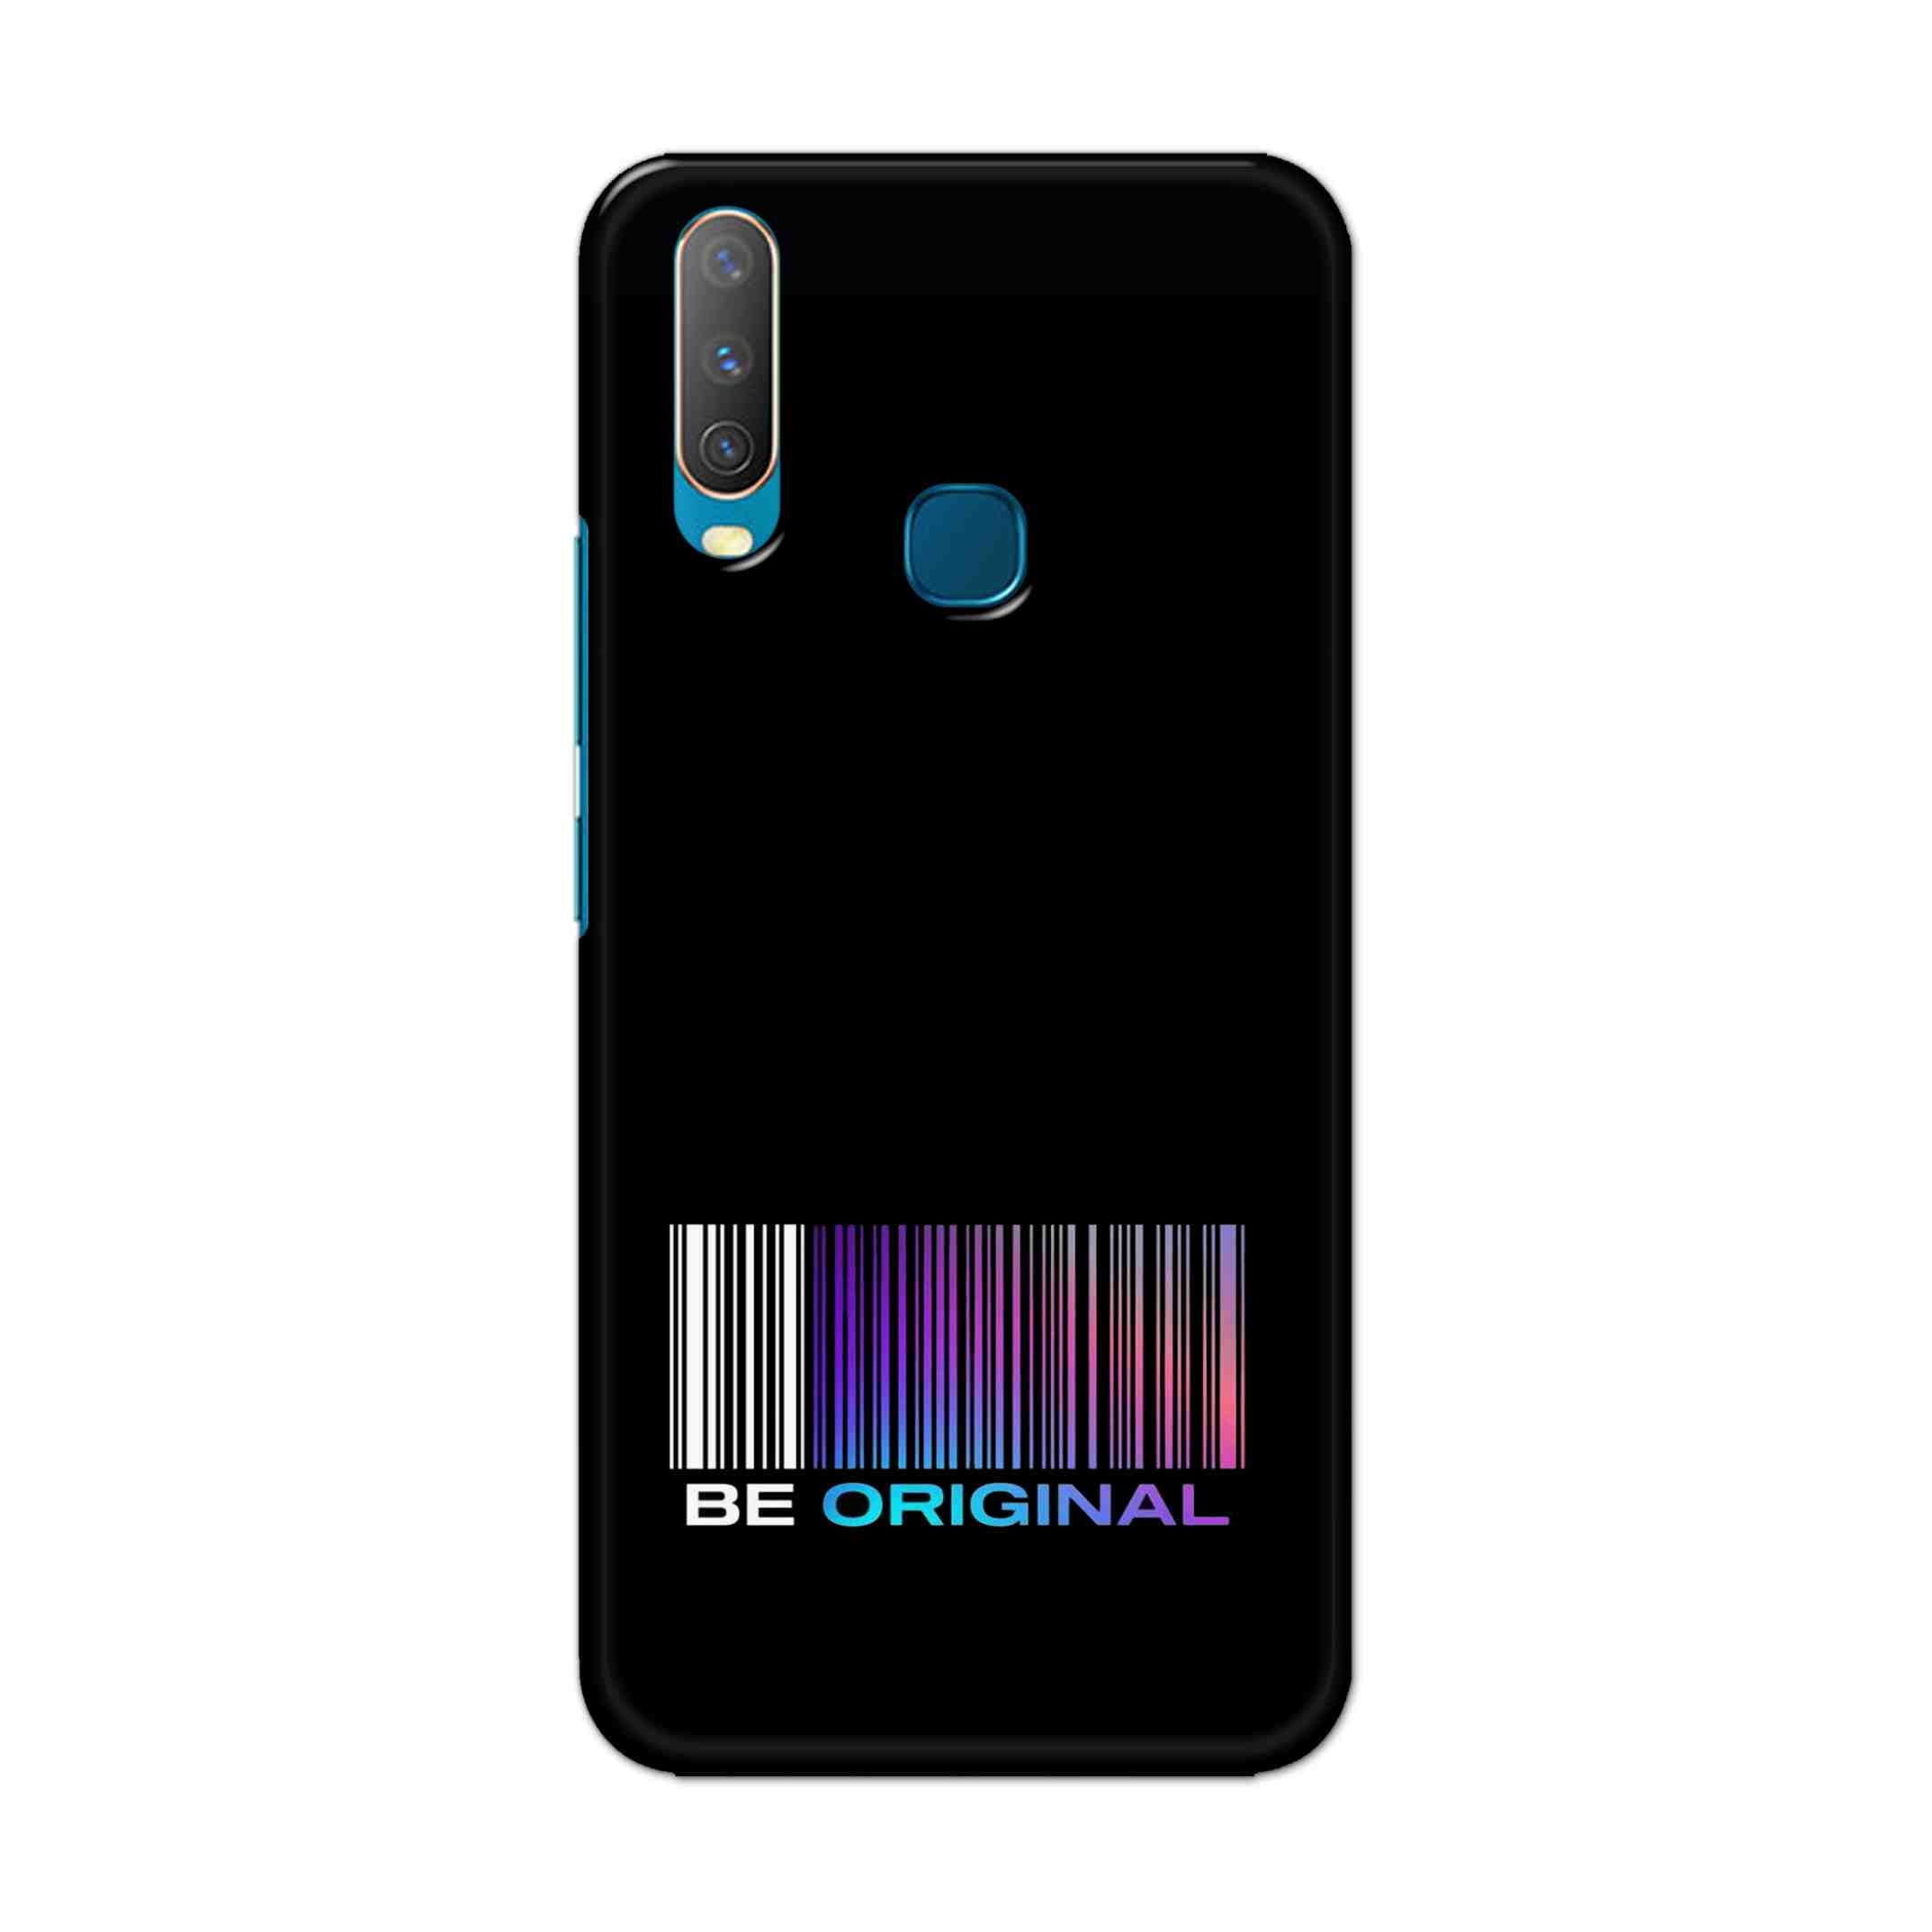 Buy Be Original Hard Back Mobile Phone Case Cover For Vivo Y17 / U10 Online